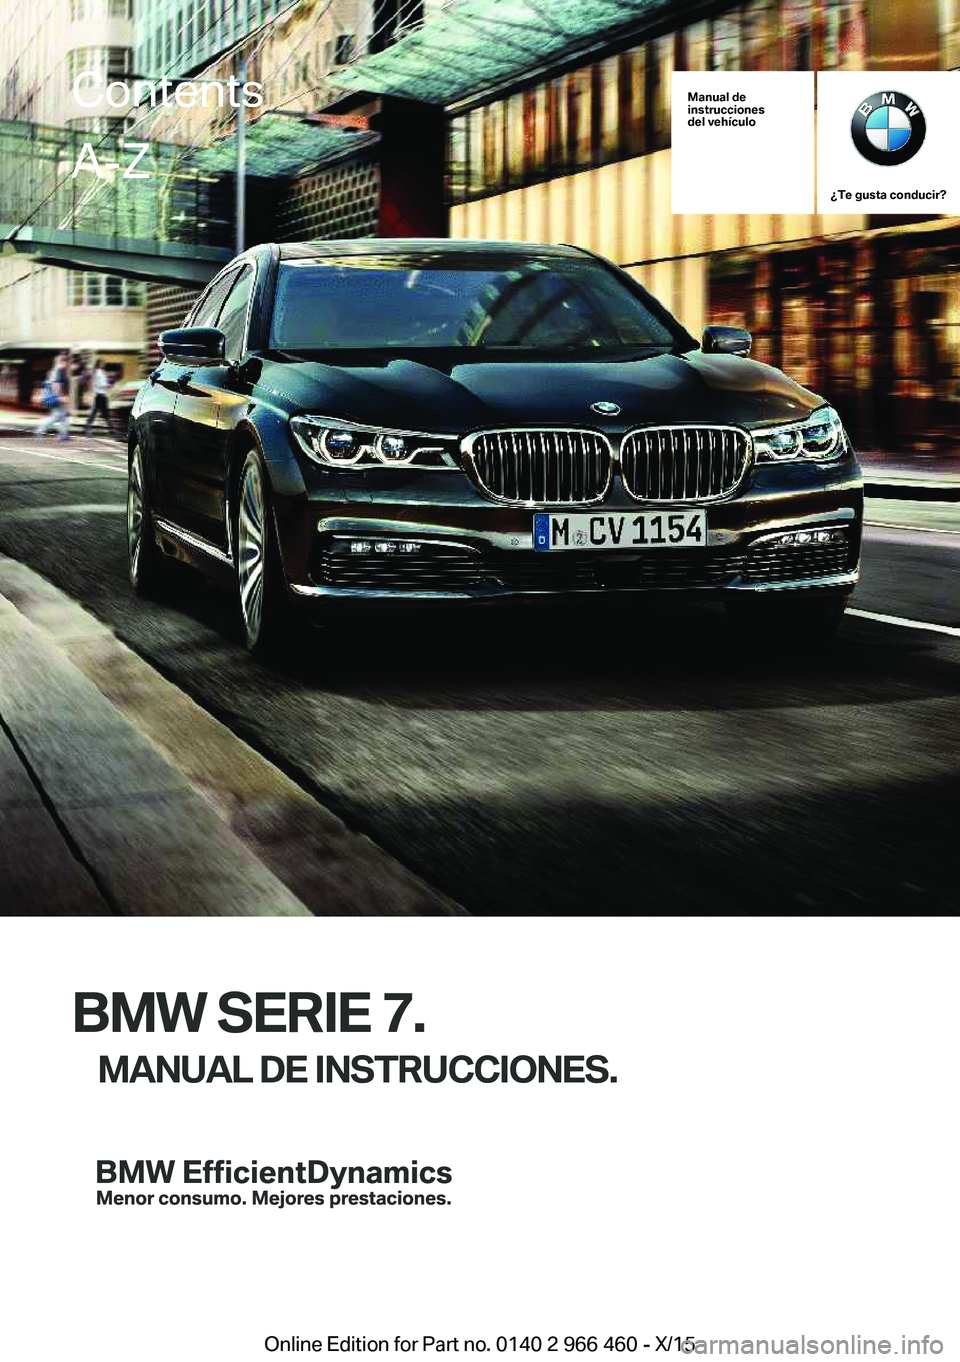 BMW 7 SERIES 2016  Manuales de Empleo (in Spanish) Manual de
instrucciones
del vehículo
¿Te gusta conducir?
BMW SERIE 7.
MANUAL DE INSTRUCCIONES.
ContentsA-Z
Online Edition for Part no. 0140 2 966 460 - X/15   